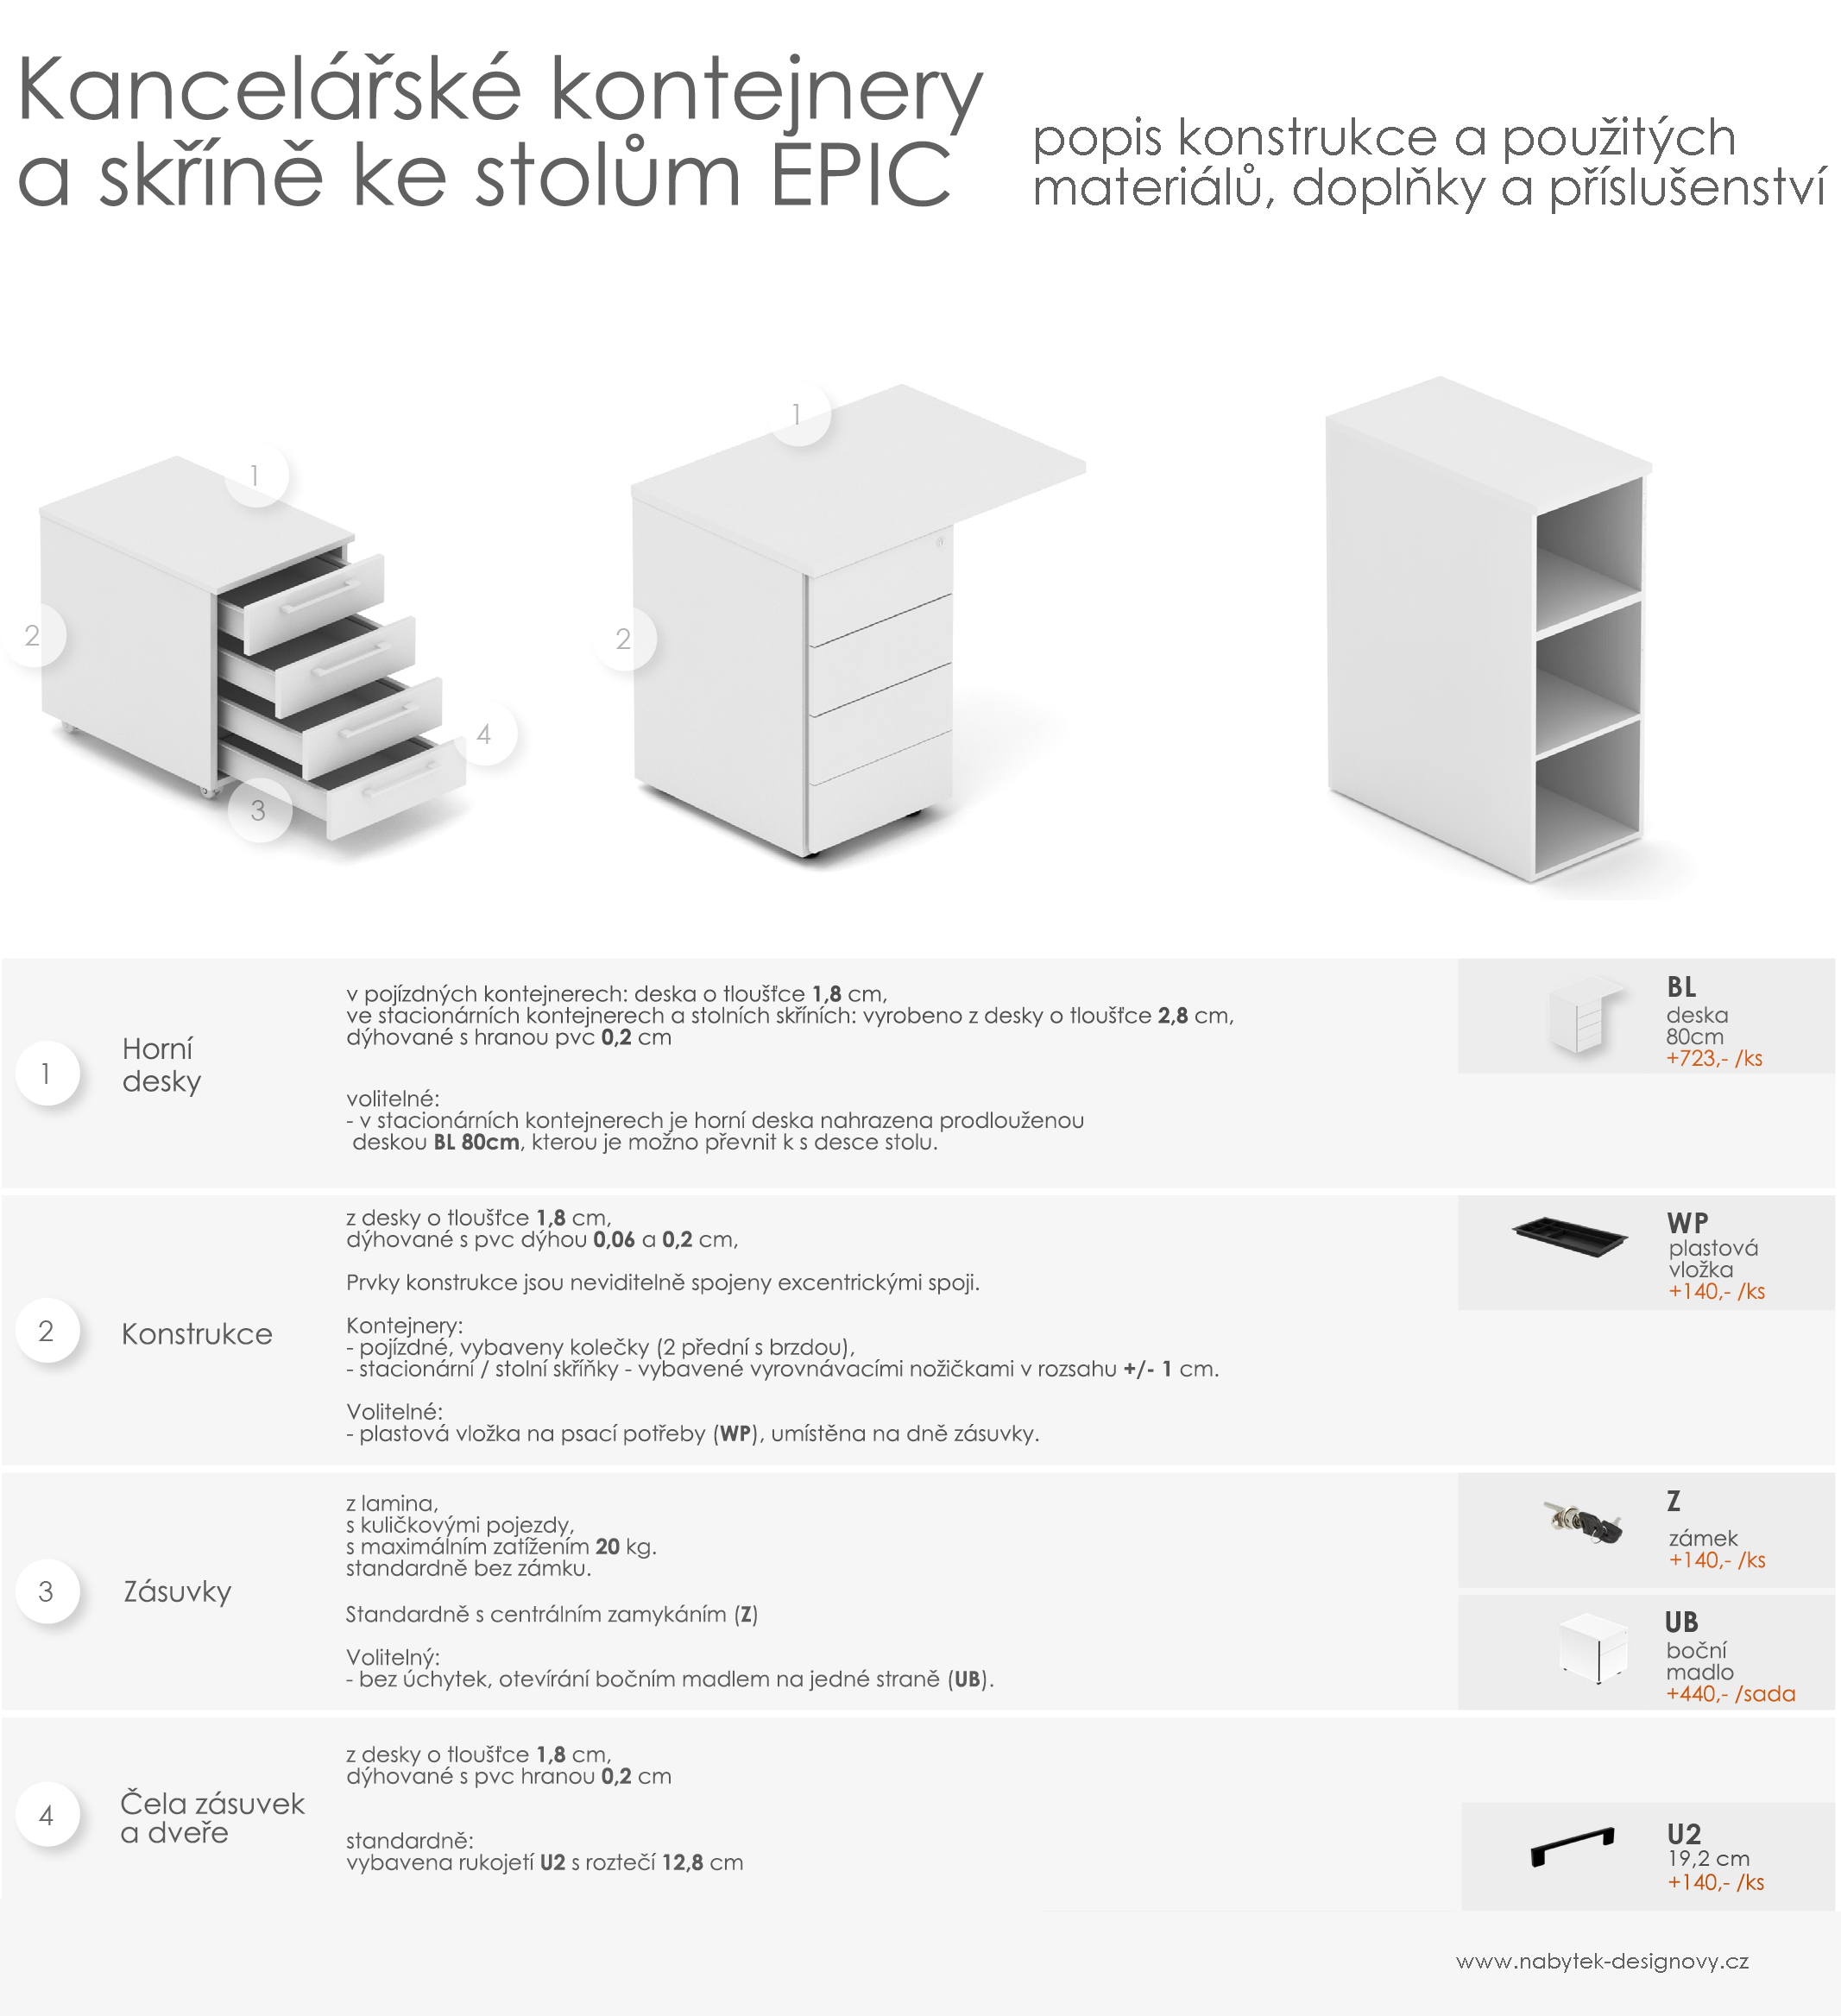 Kancelářské kontejnery EPIC